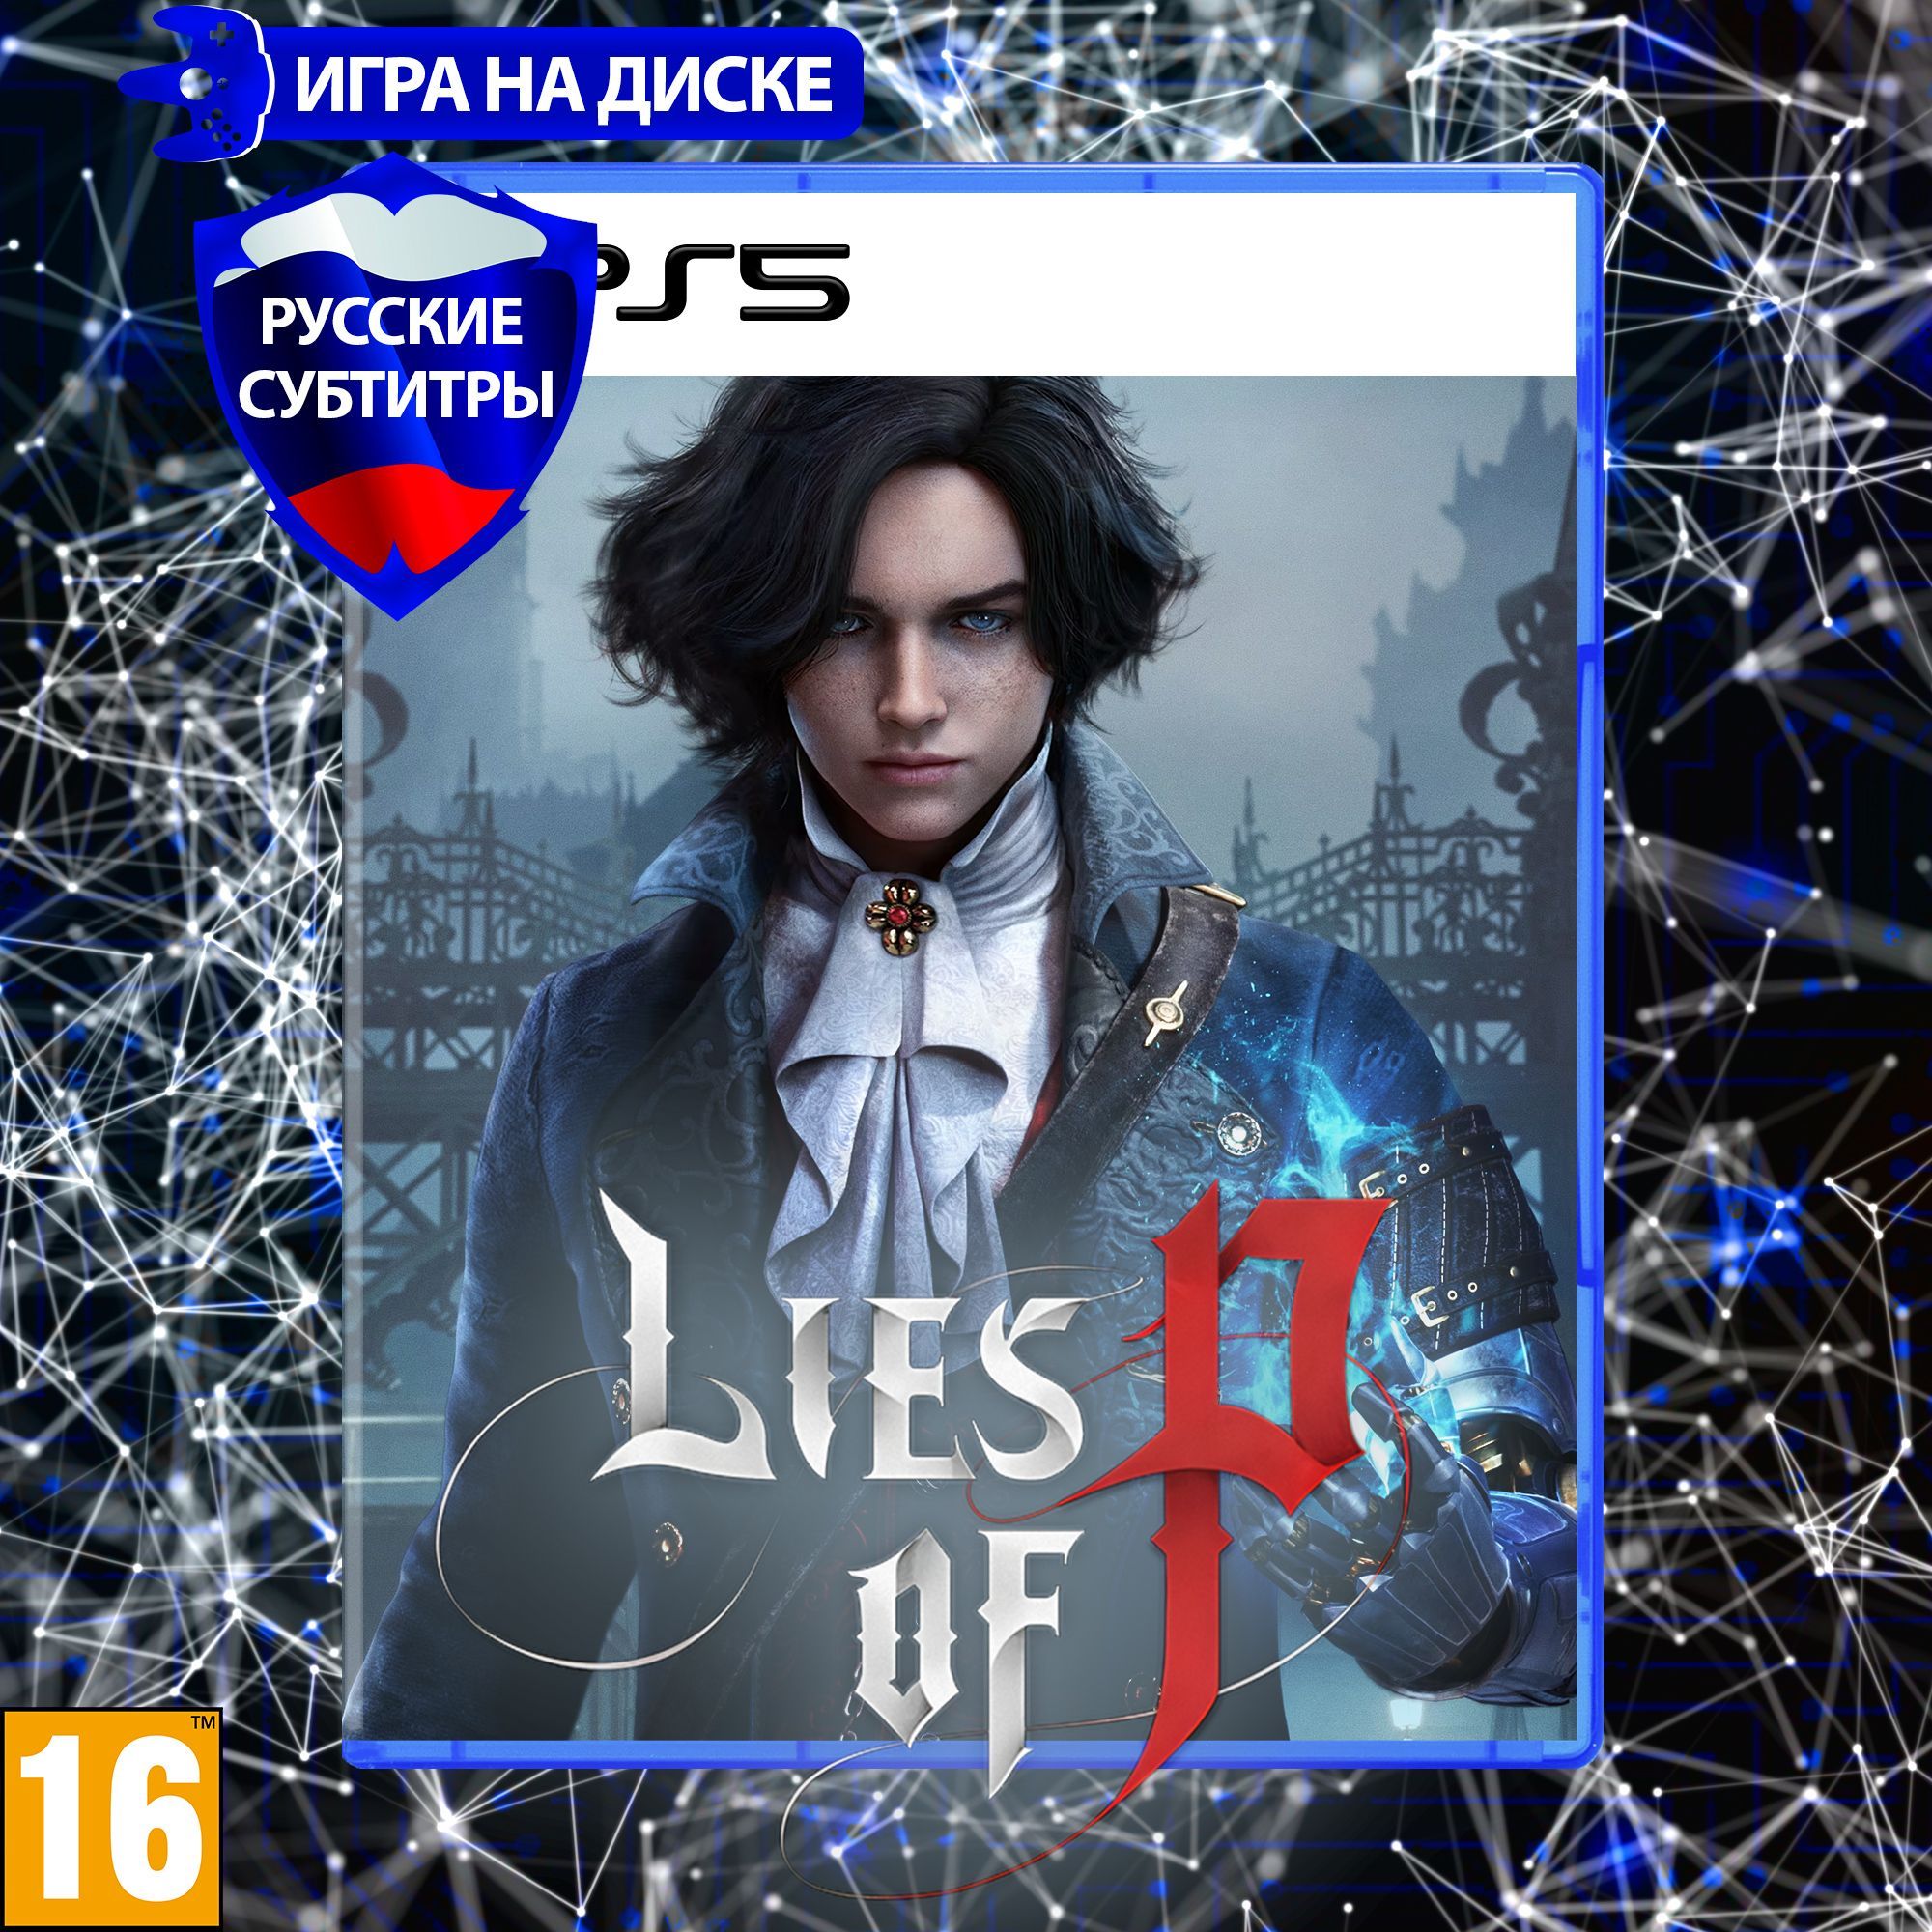 ИграLiesofPдляPlaystation5(PS5),Русскиесубтитры